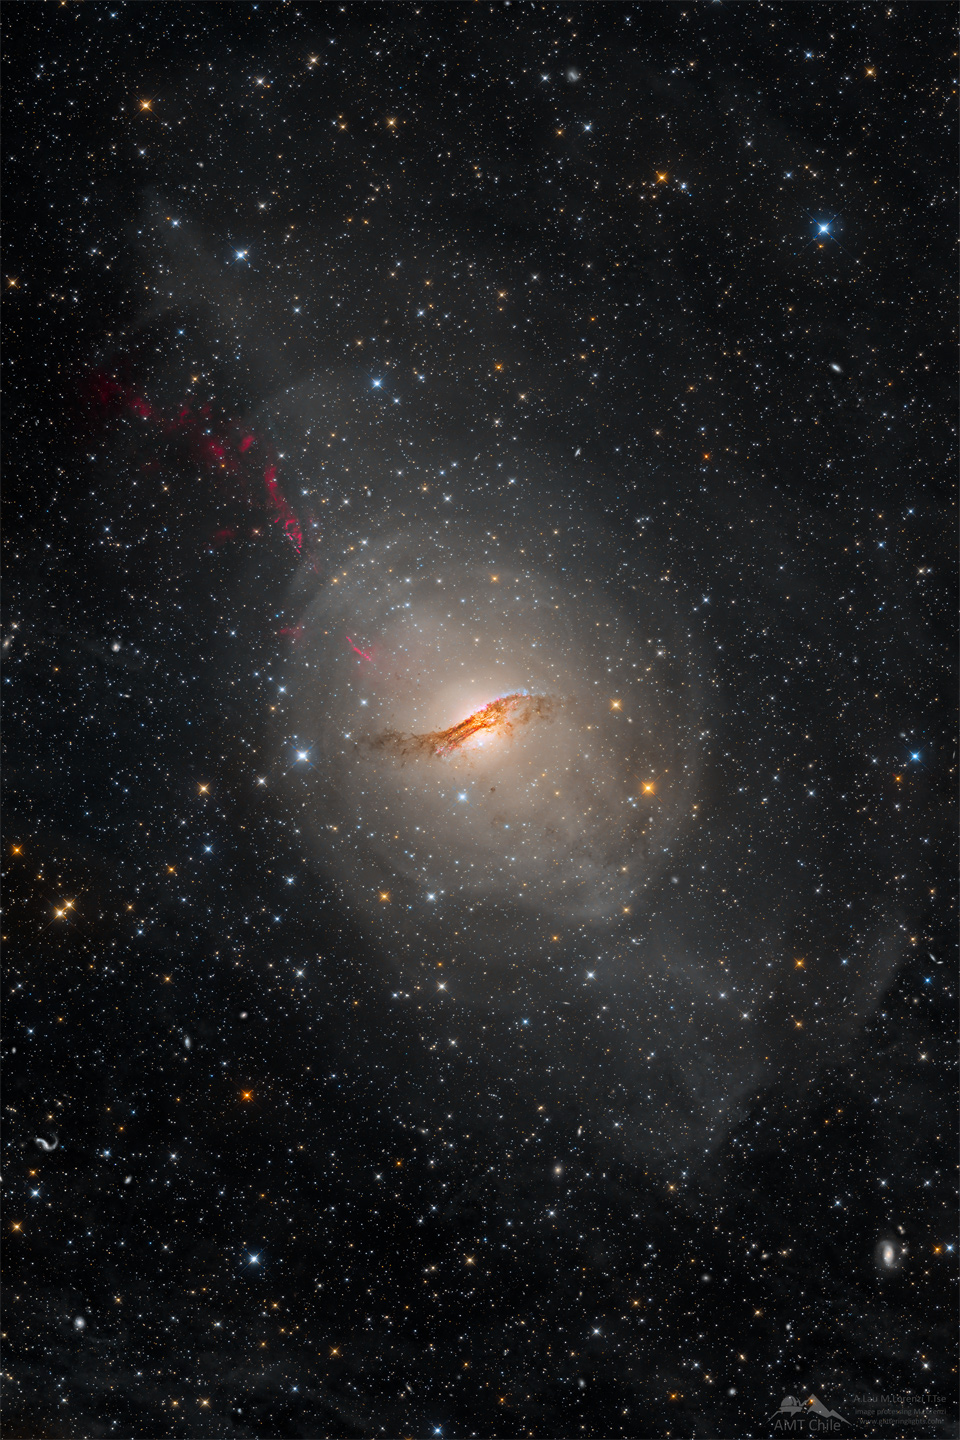 Długa ekspozycja zdjęcia powoduje, że niezwykła galaktyka Centaurus A ukazuje swój owal przecięty złożonym pasem ciemnego pyłu.
Wokół galaktyki widoczne są liczne gwiazdy tła. Więcej szczegółowych informacji w opisie poniżej.